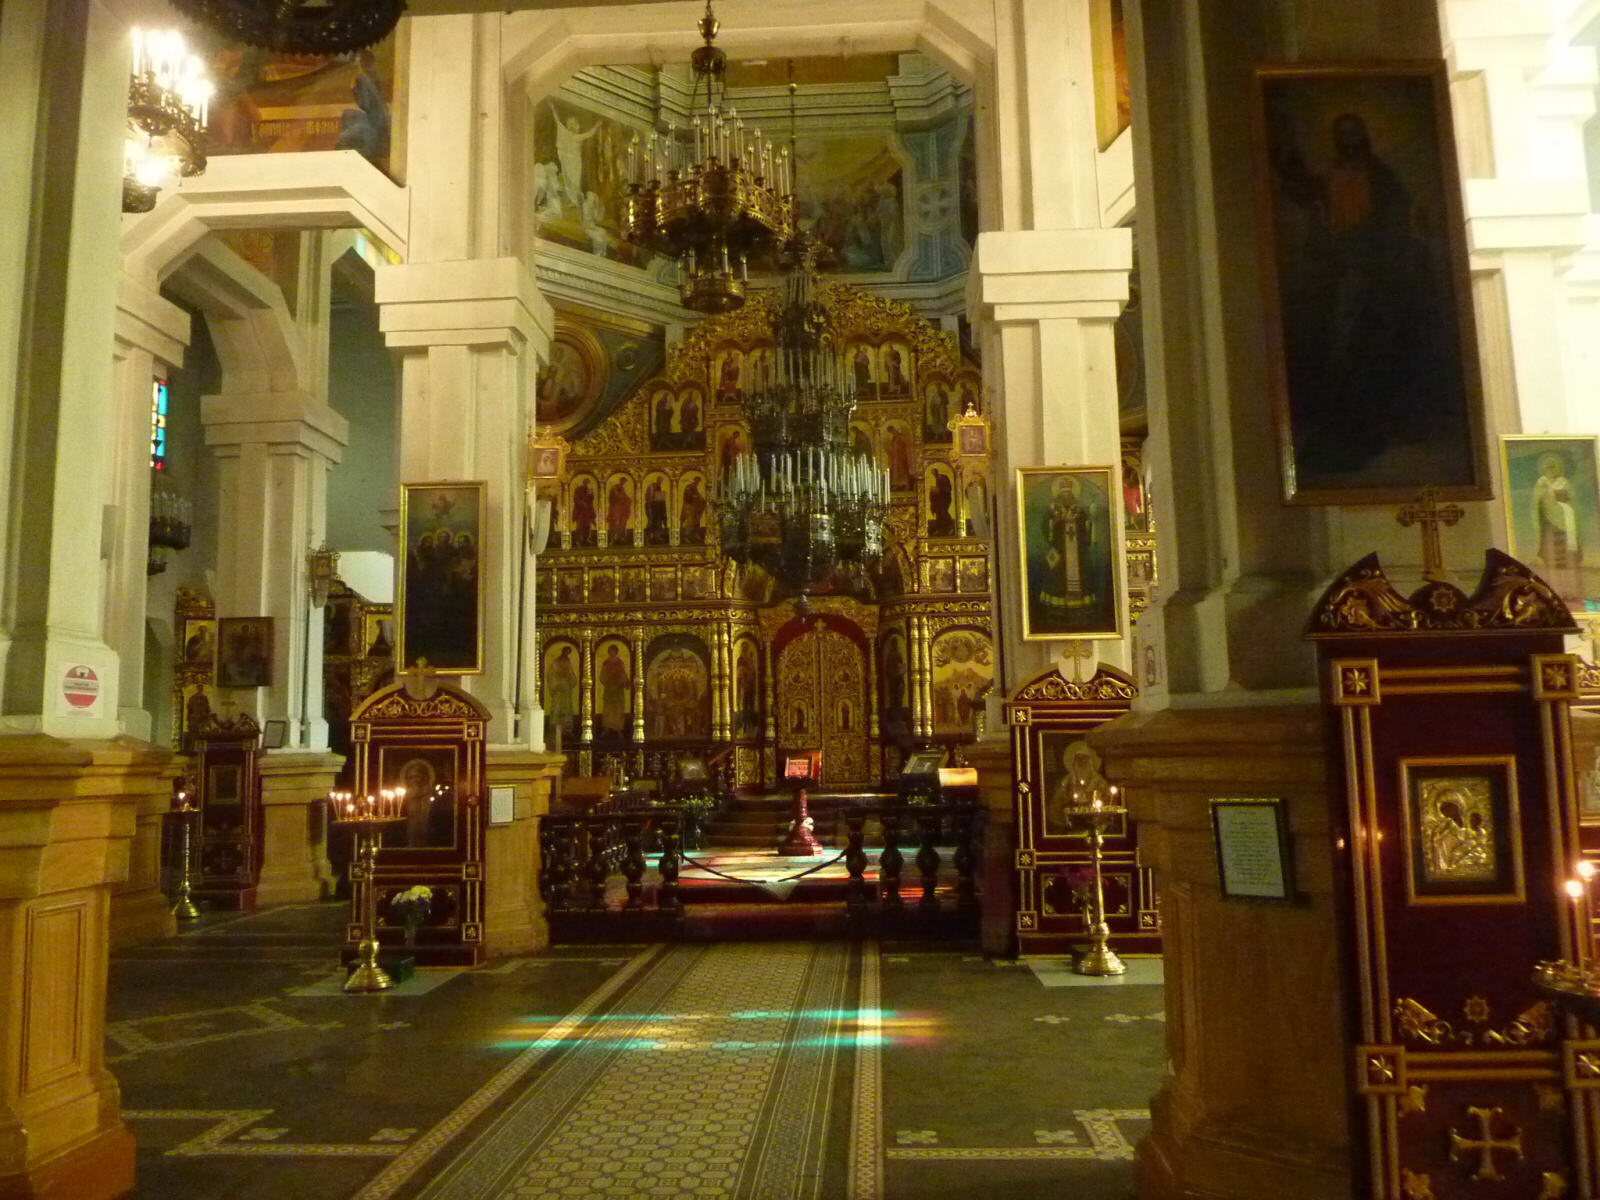 Inside Zenkov cathedral in Almaty, Kazakhstan